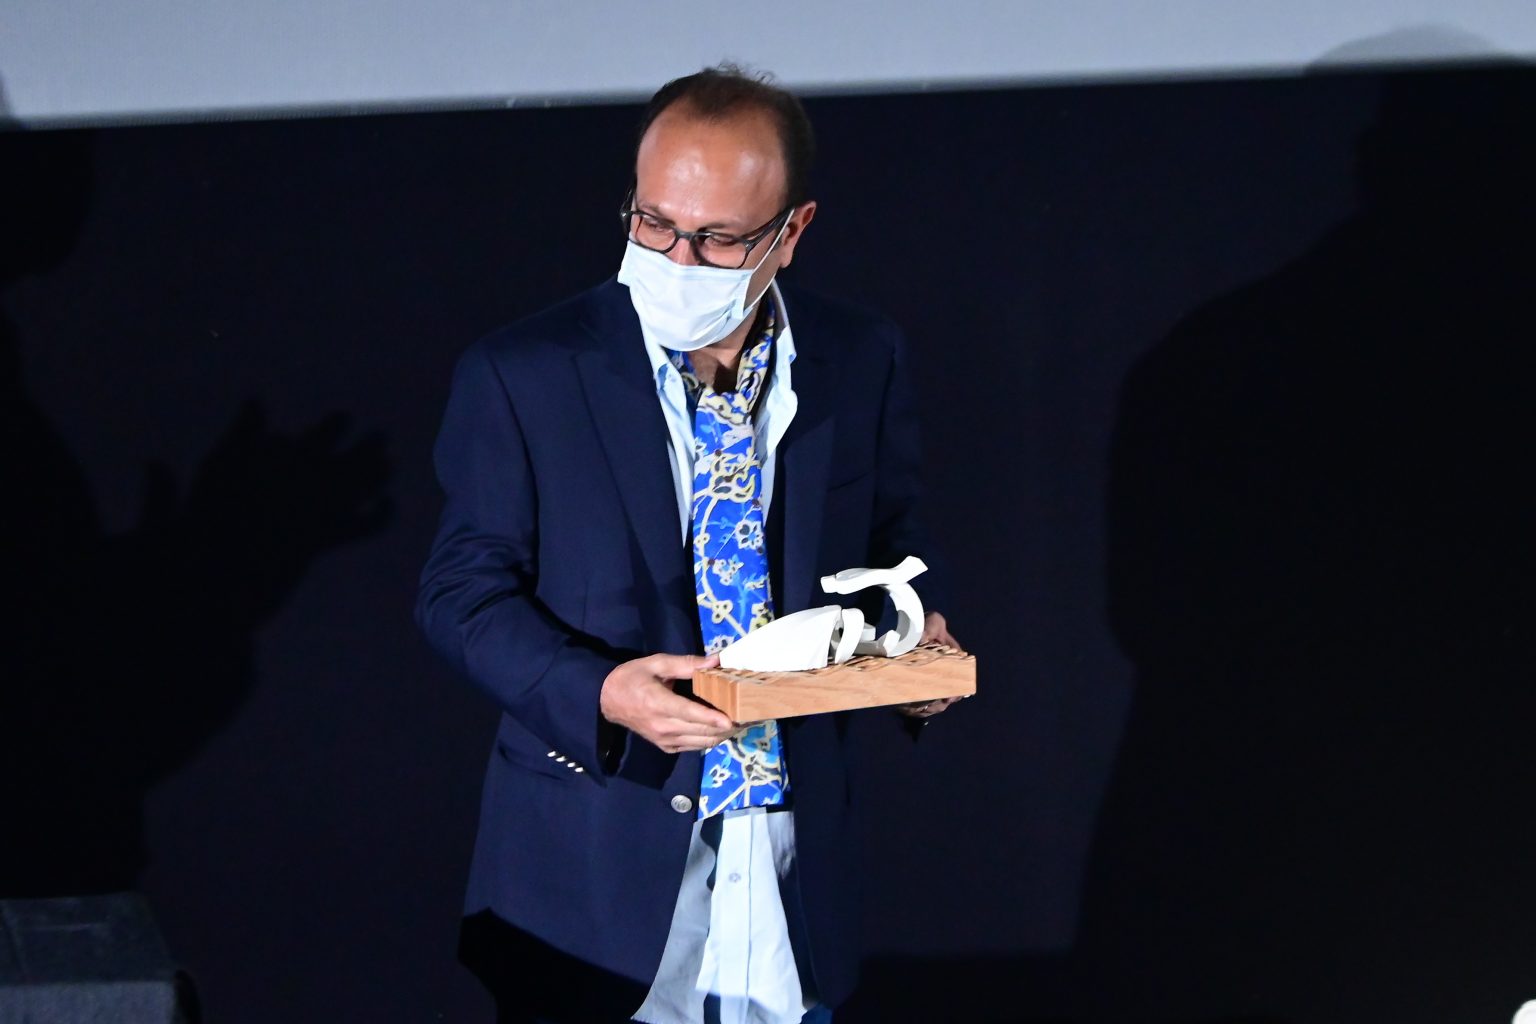 اصغر فرهادی جایزه افتخاری جشنواره لاس پالماس اسپانیا را دریافت کرد